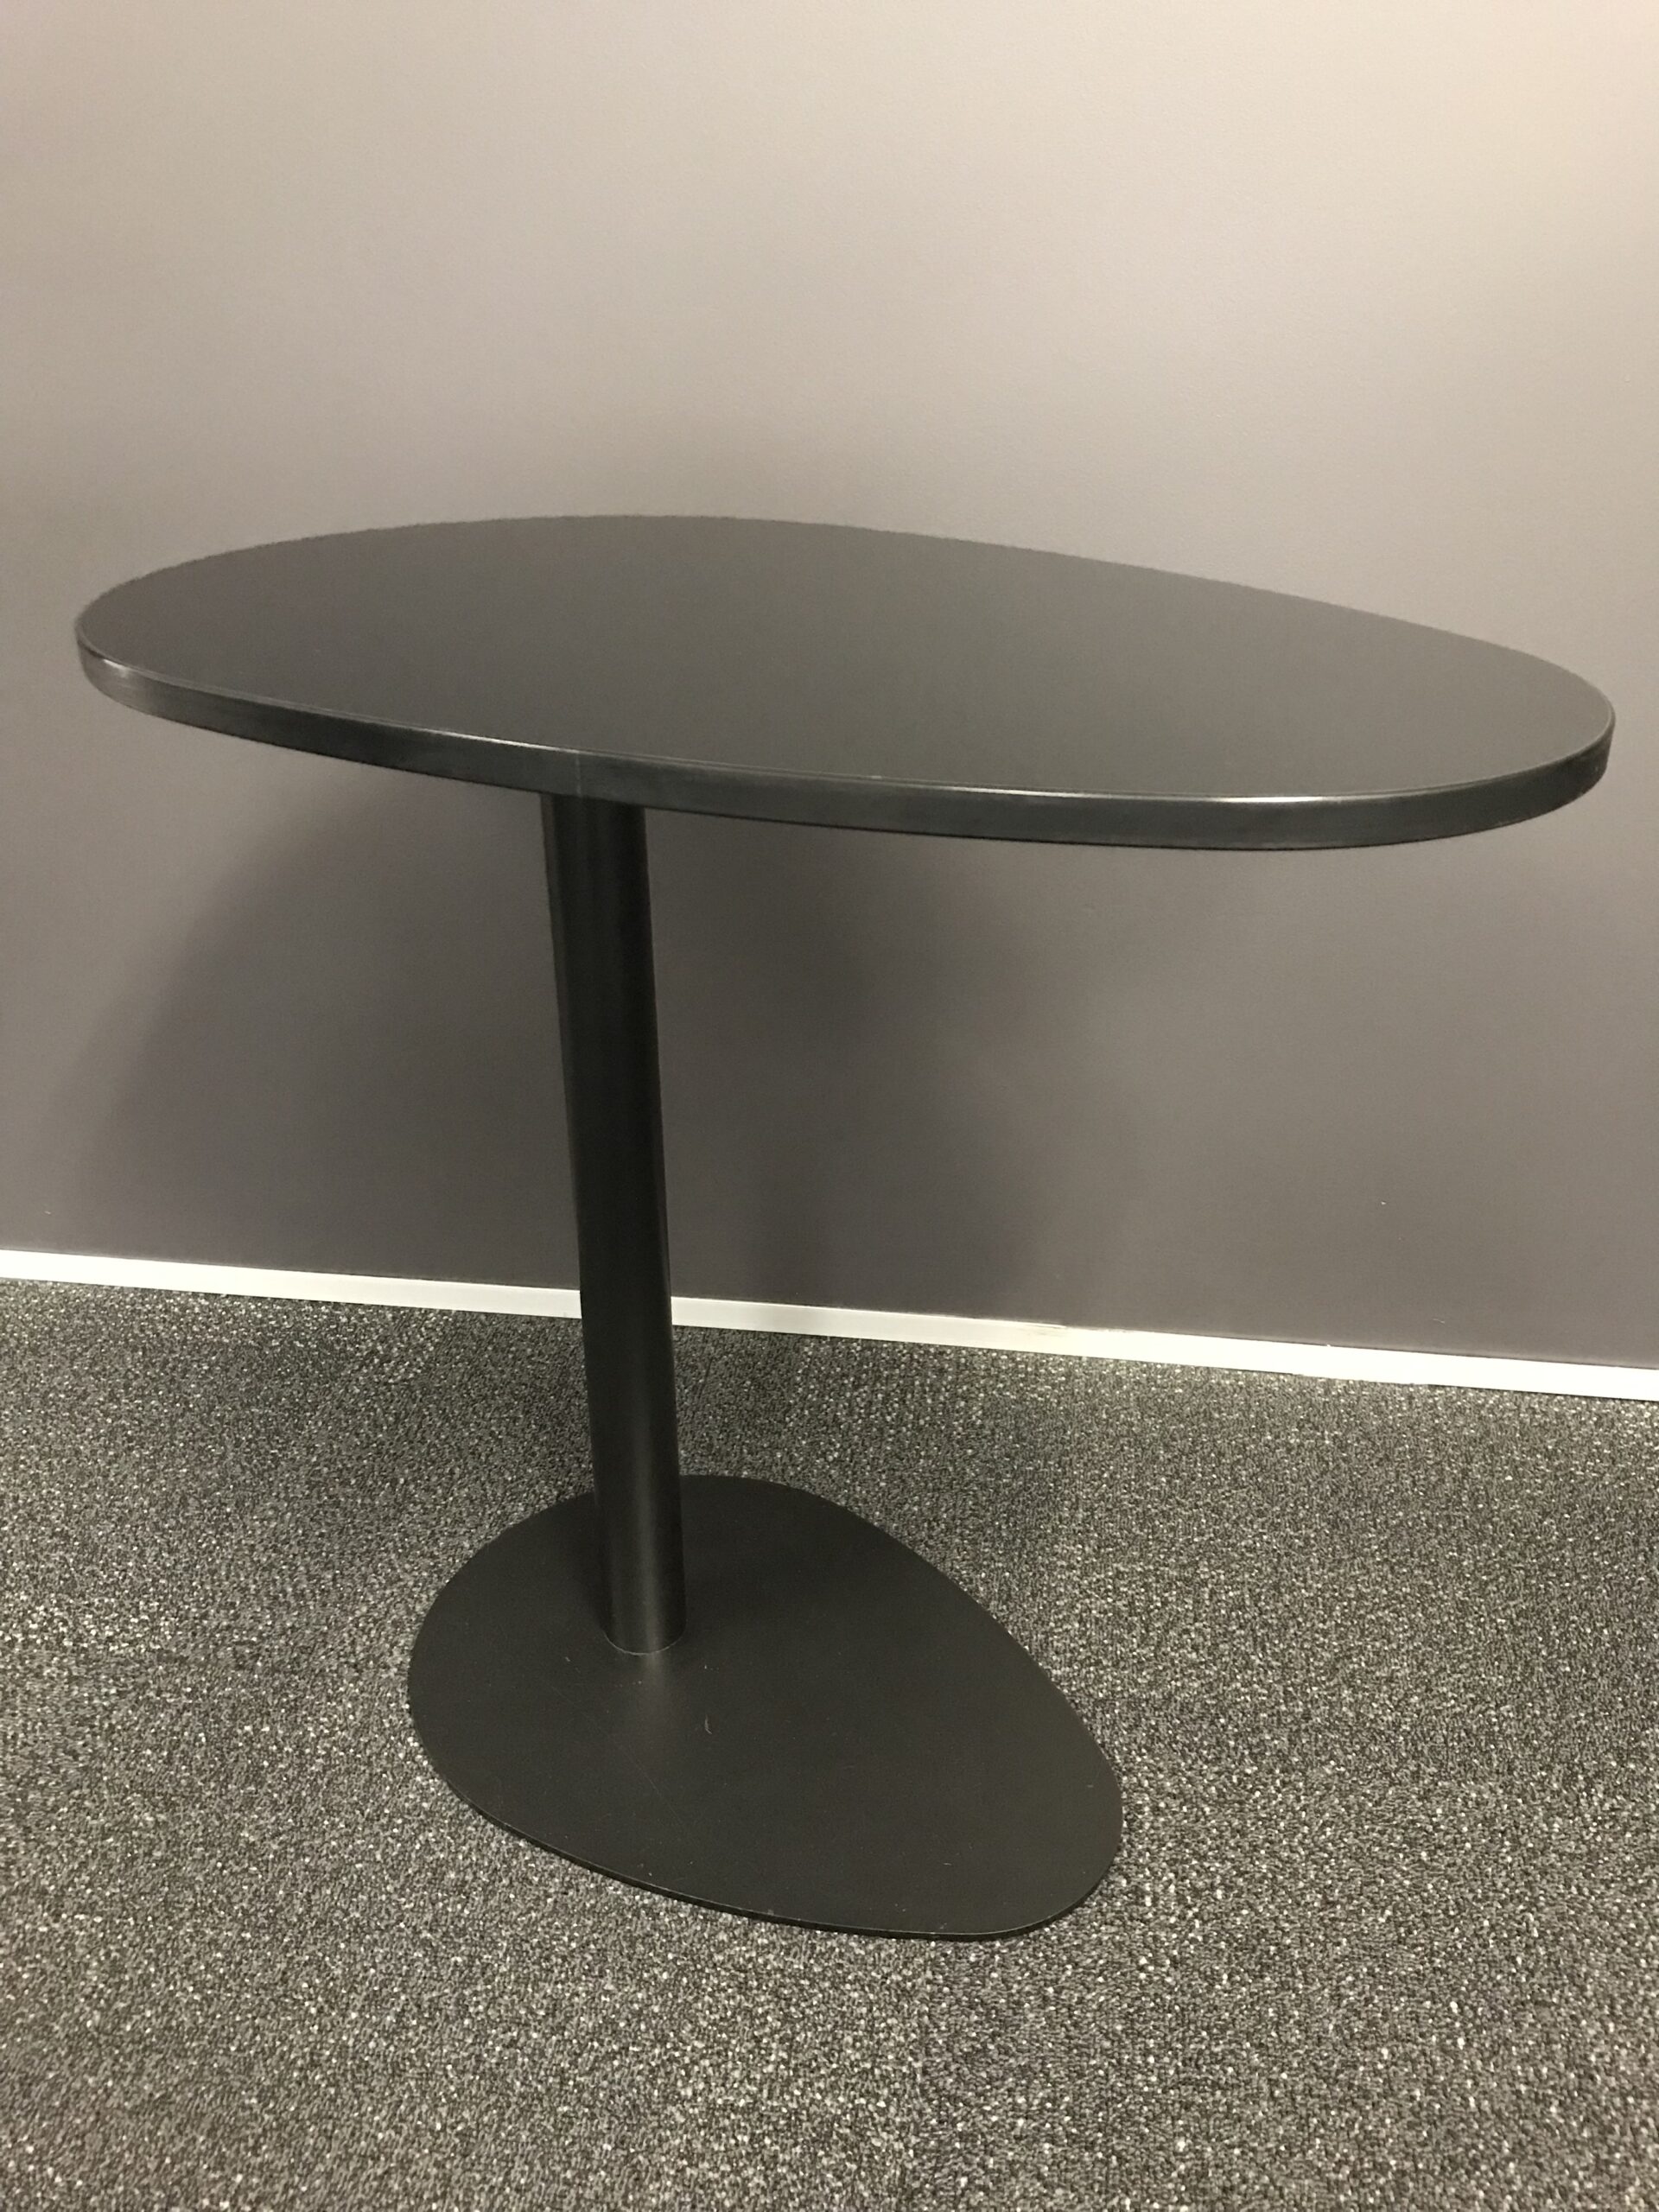 Designer Table | FIL Furniture